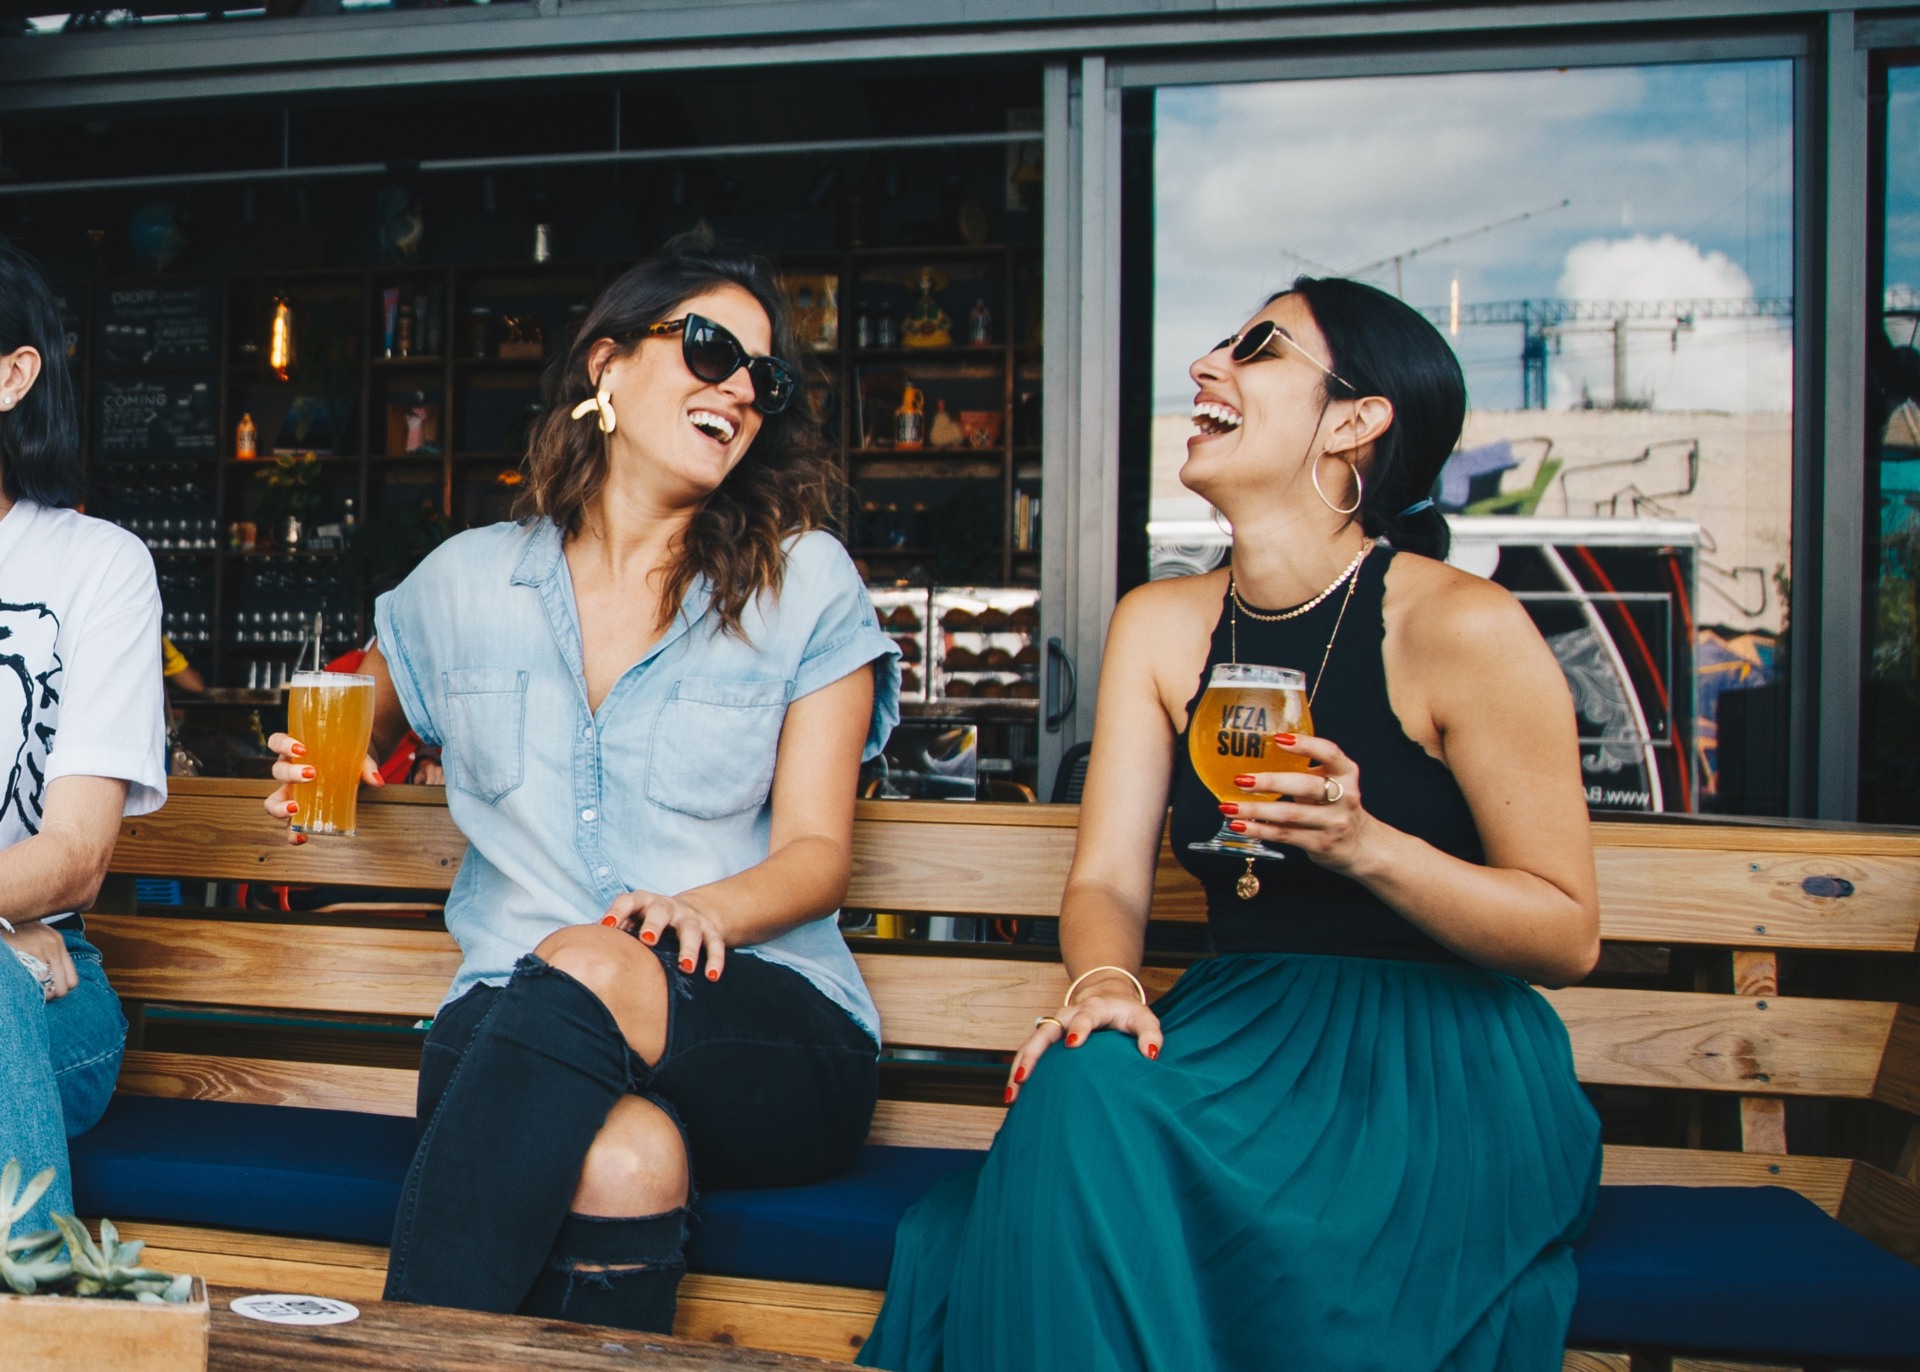 Chicas riéndose sentadas tomando una cerveza